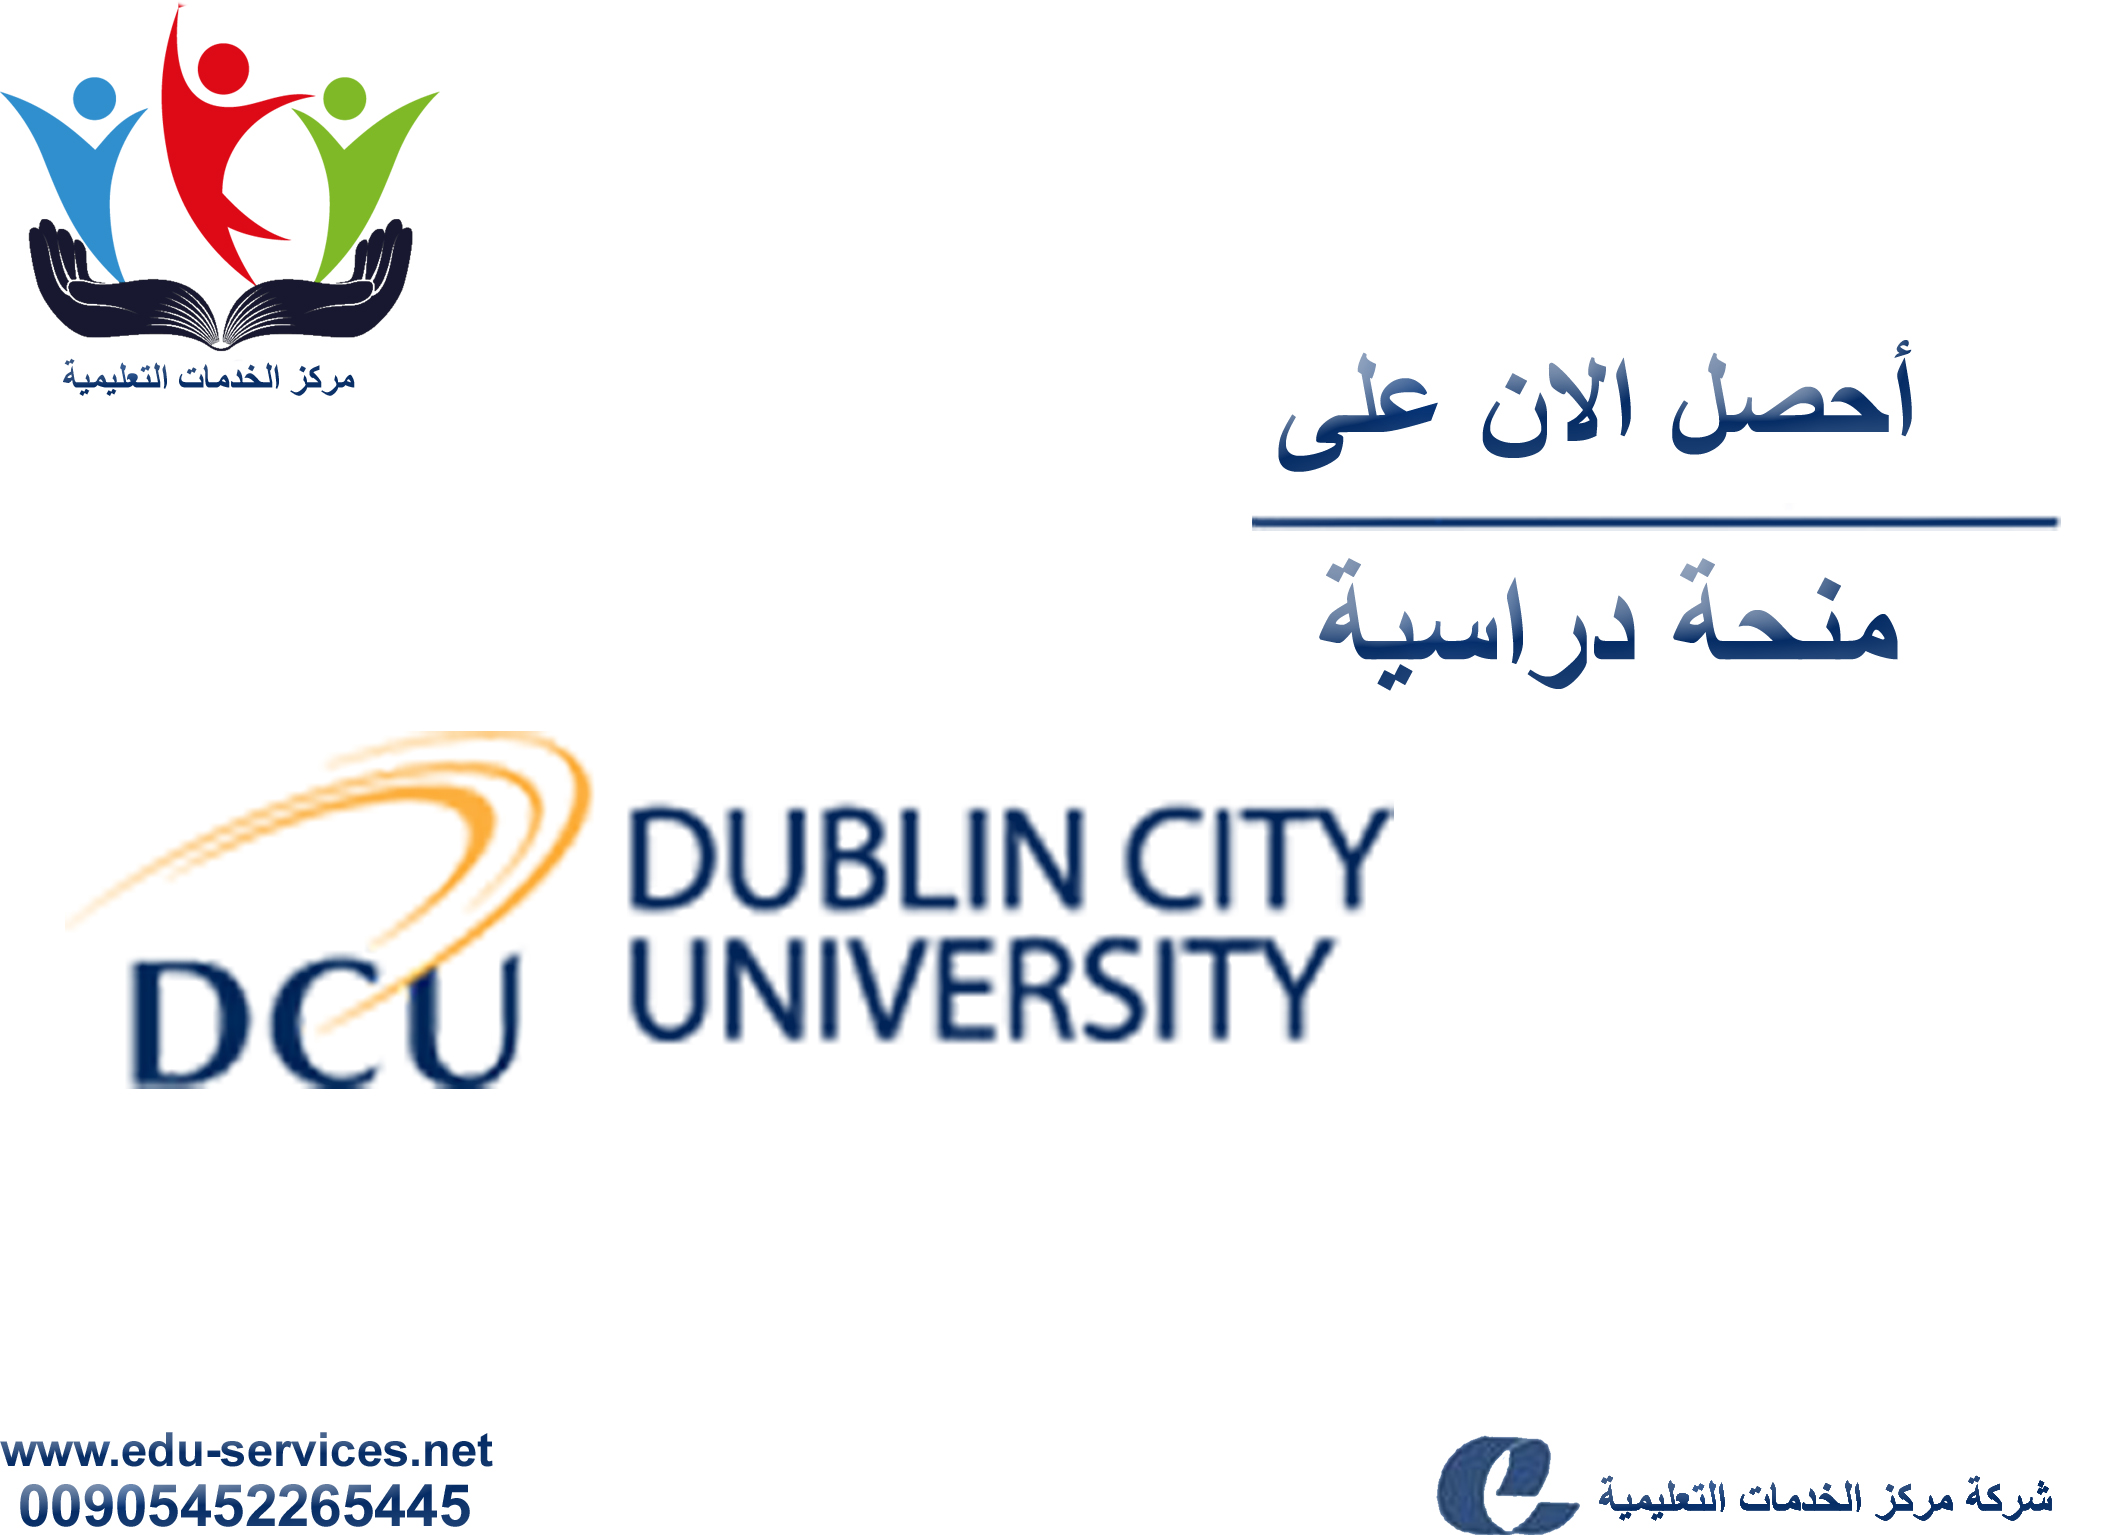 منح دراسية لدرجة لدرجة الدكتوراه من DCU في أيرلندا للعام 2018-2019